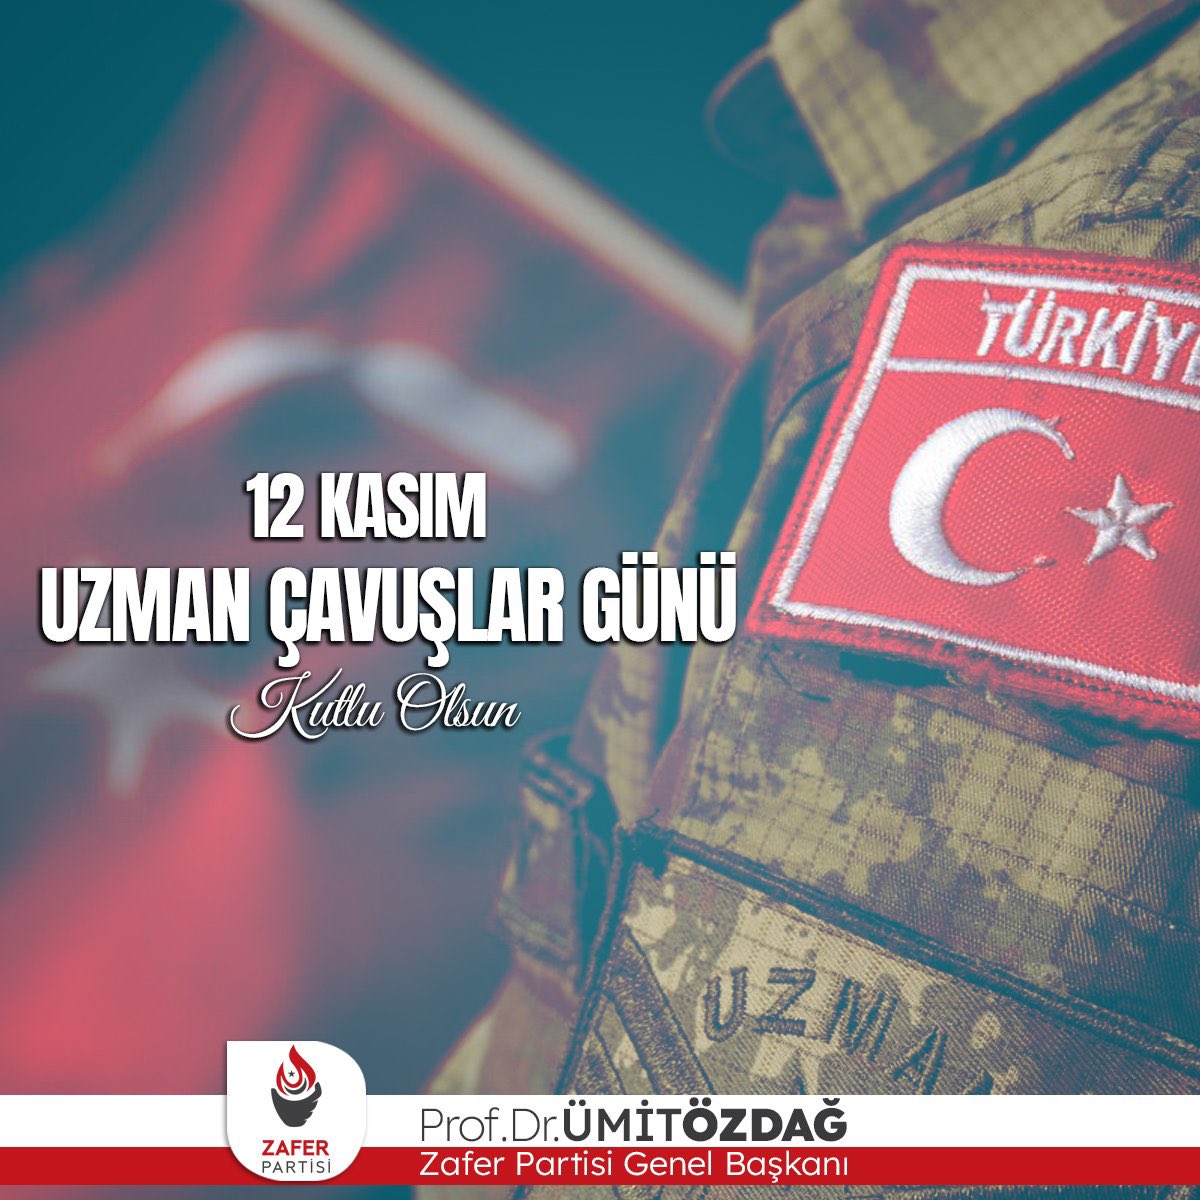 Ümit Özdağ: “Türk ordusunun kahraman evlatlarının #12KasımUzmanÇavuşlarGünü'nü kutluyorum.”